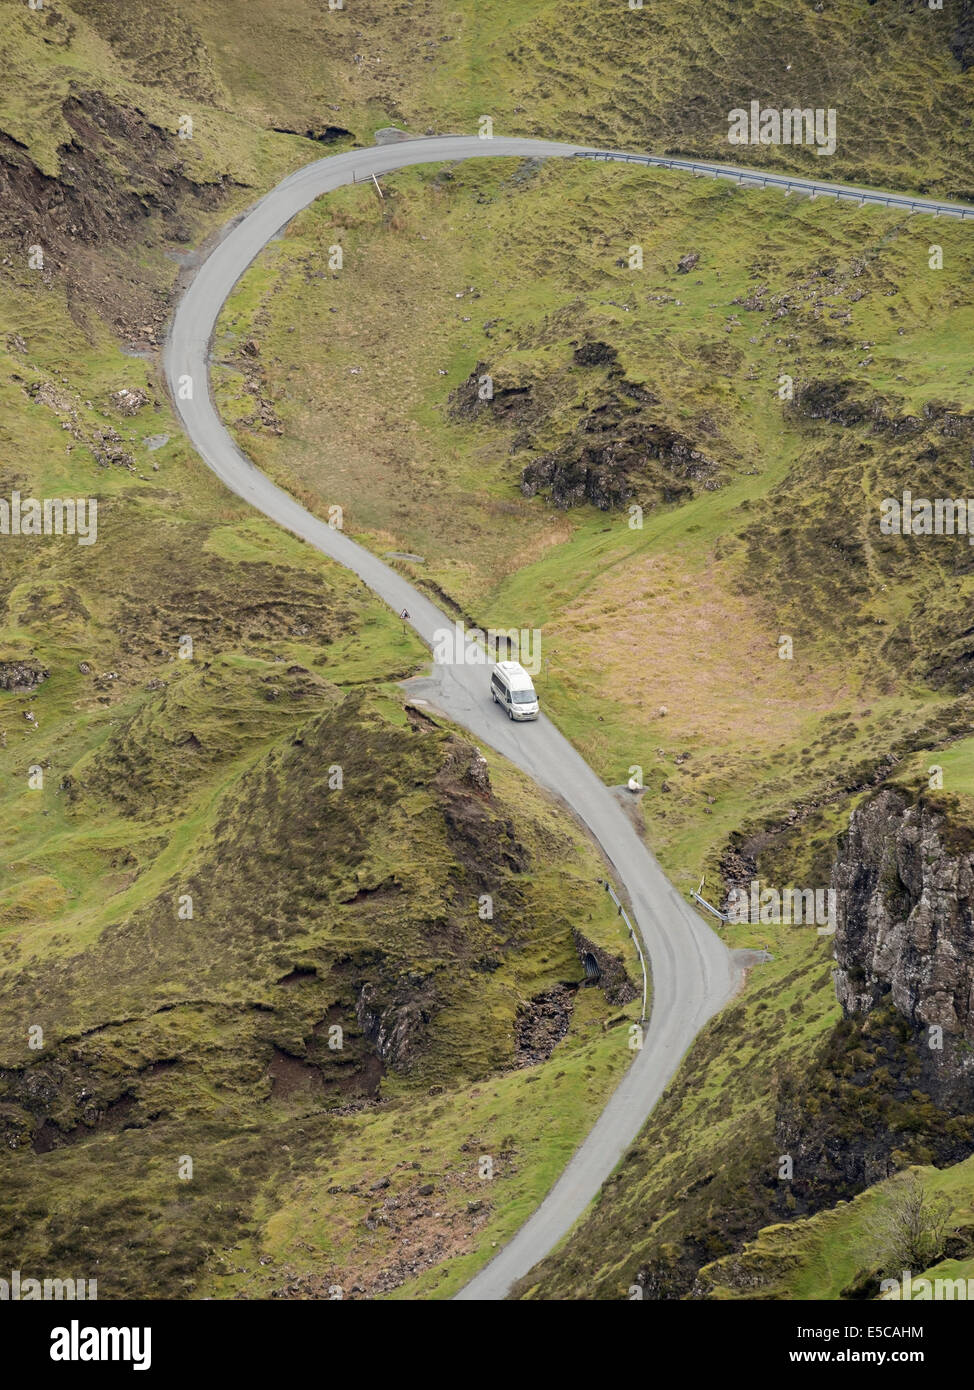 Regardant vers le bas sur les petits camping-van sur les pentes raides et sinueuses, seule piste route de montagne, trotternish, Isle of Skye, Scotland, UK Banque D'Images